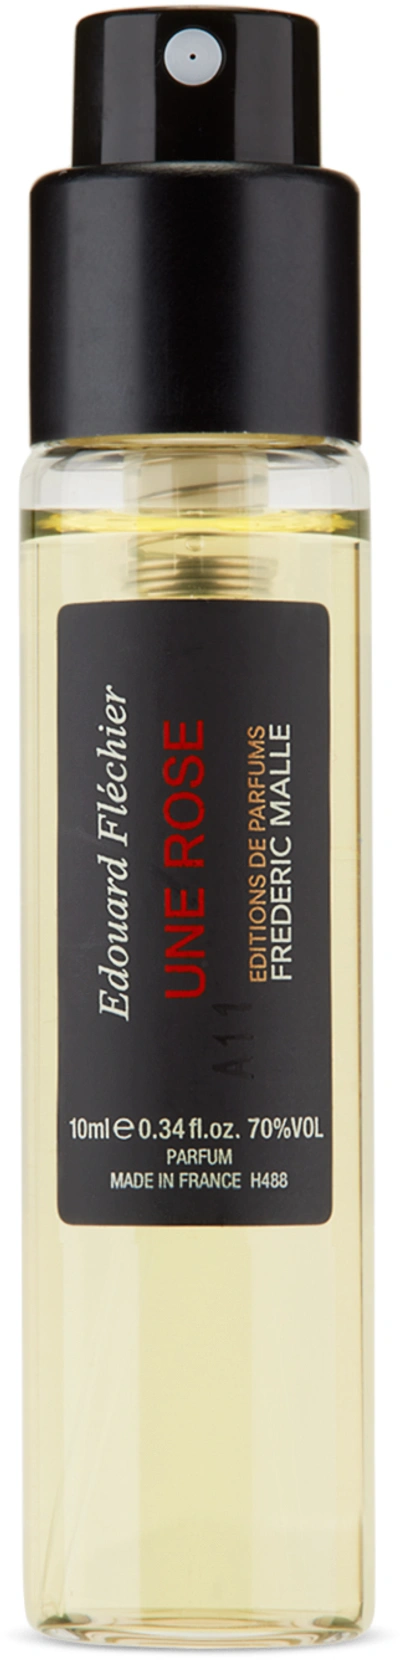 Frederic Malle Une Rose Eau De Parfum, 10 ml In Na